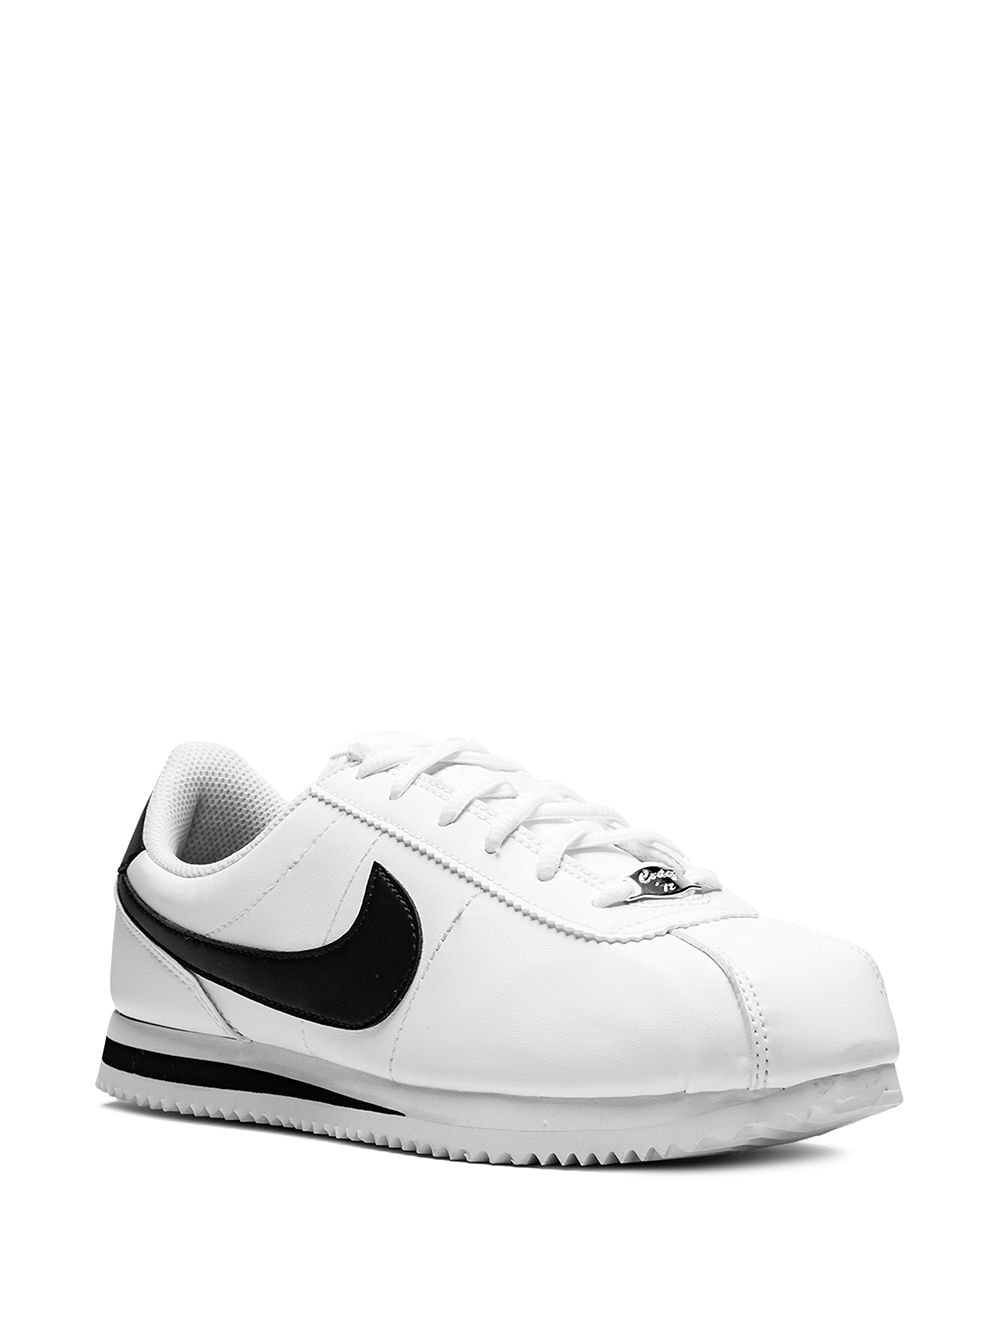 Nike Cortez Basic Leather Black/White